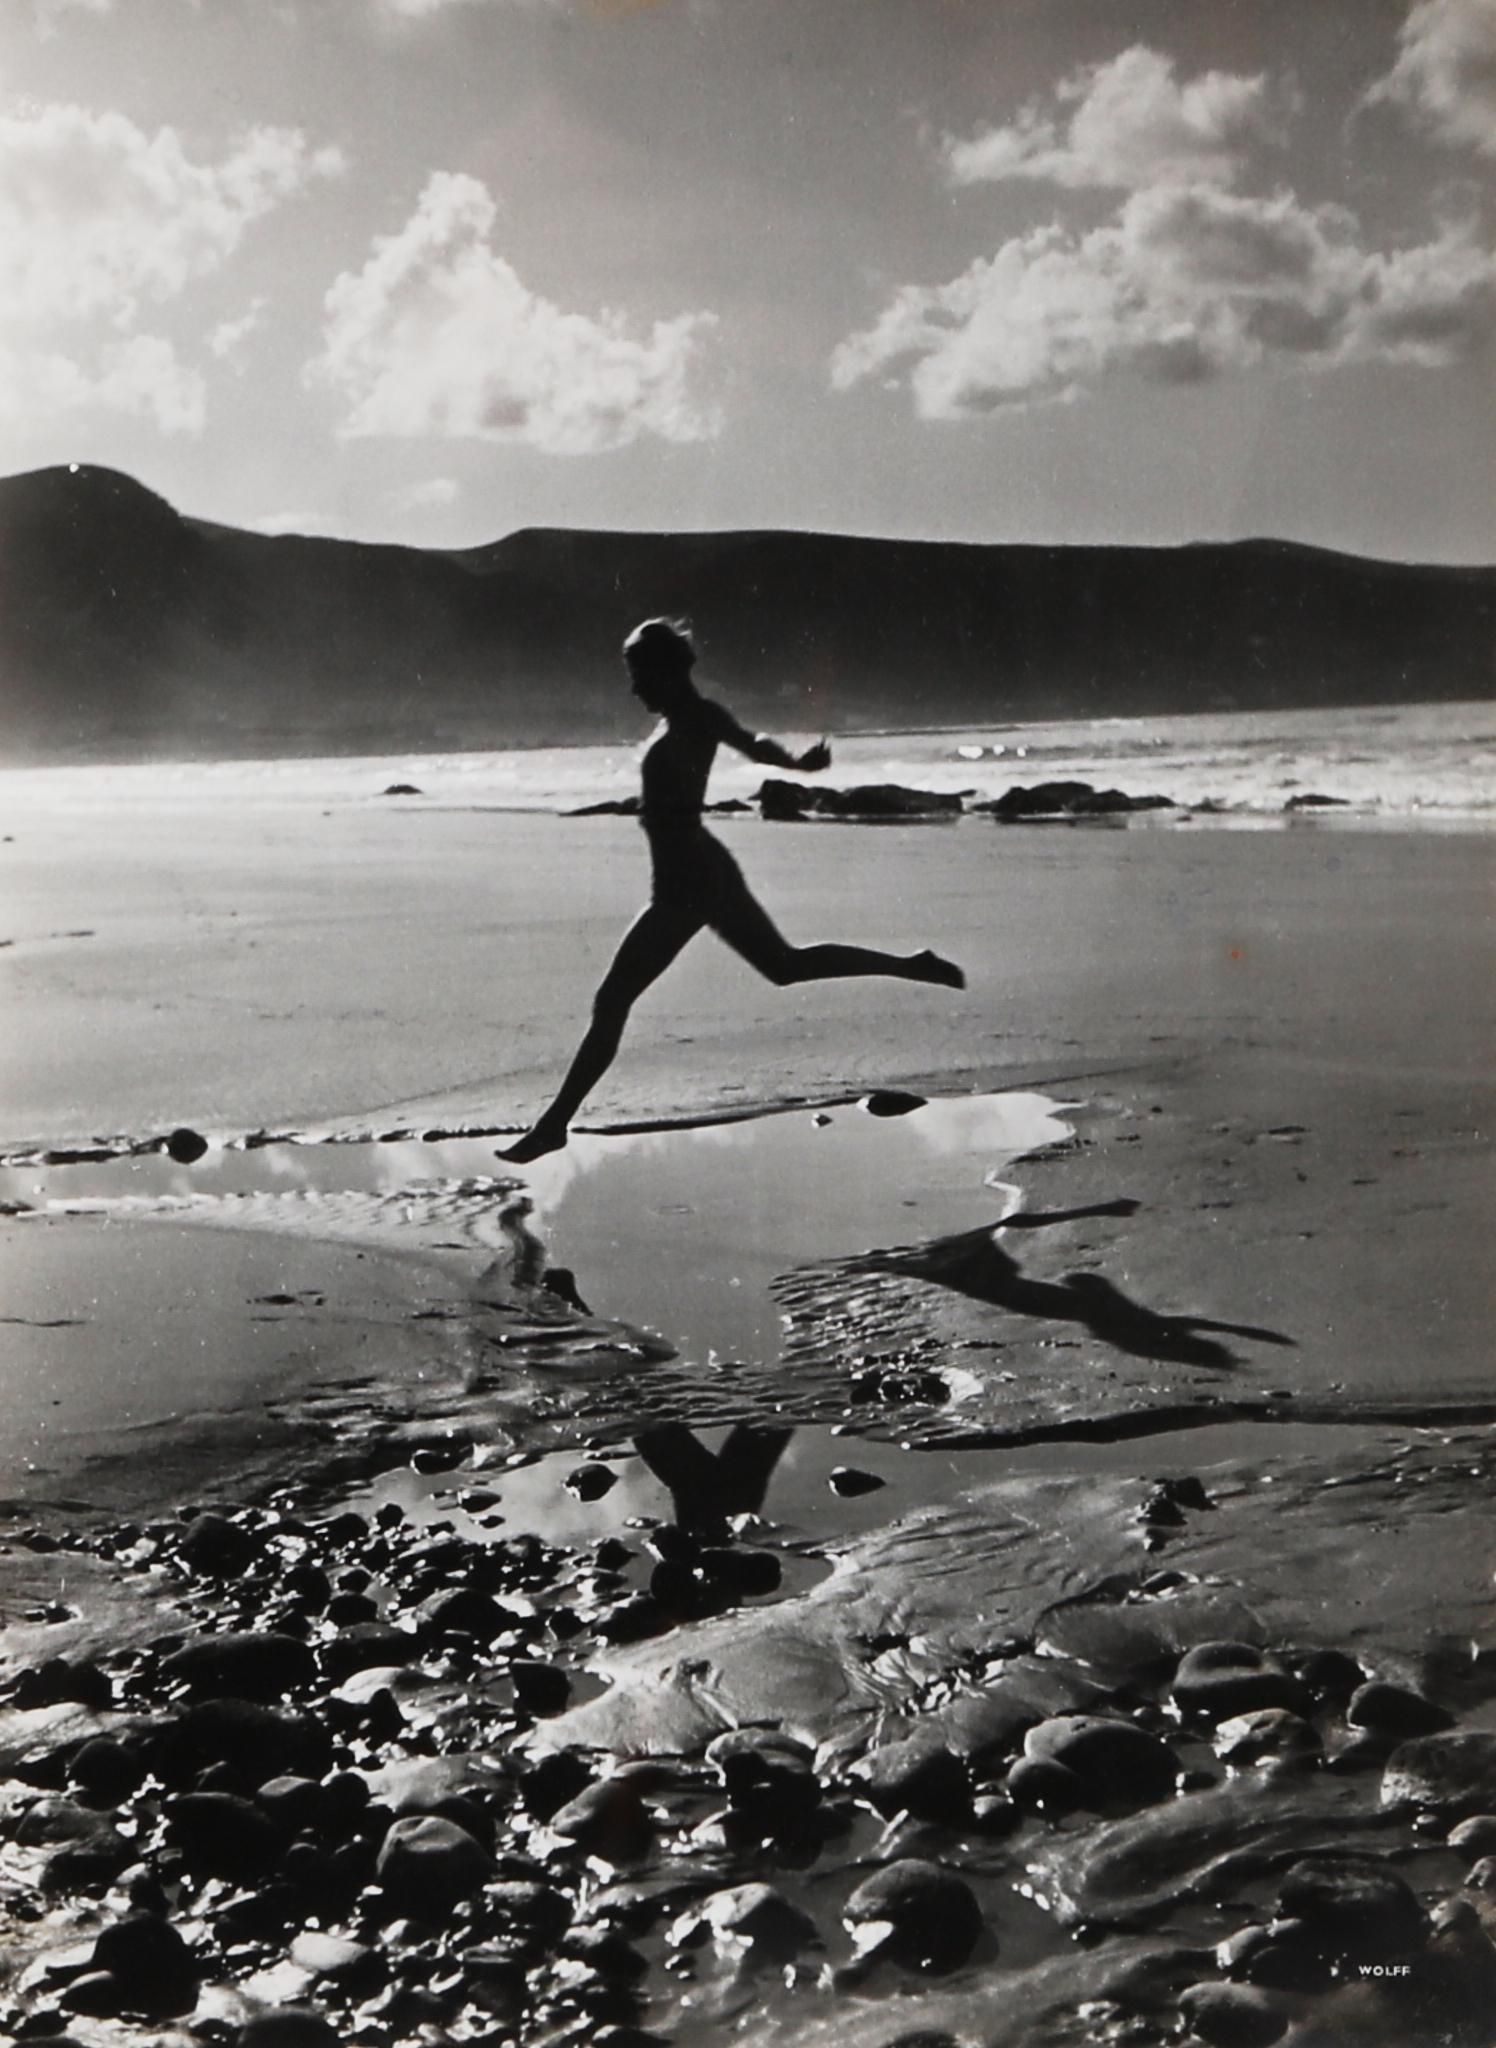 PAUL WOLFF, GIRL ON A BEACH, VOGUE